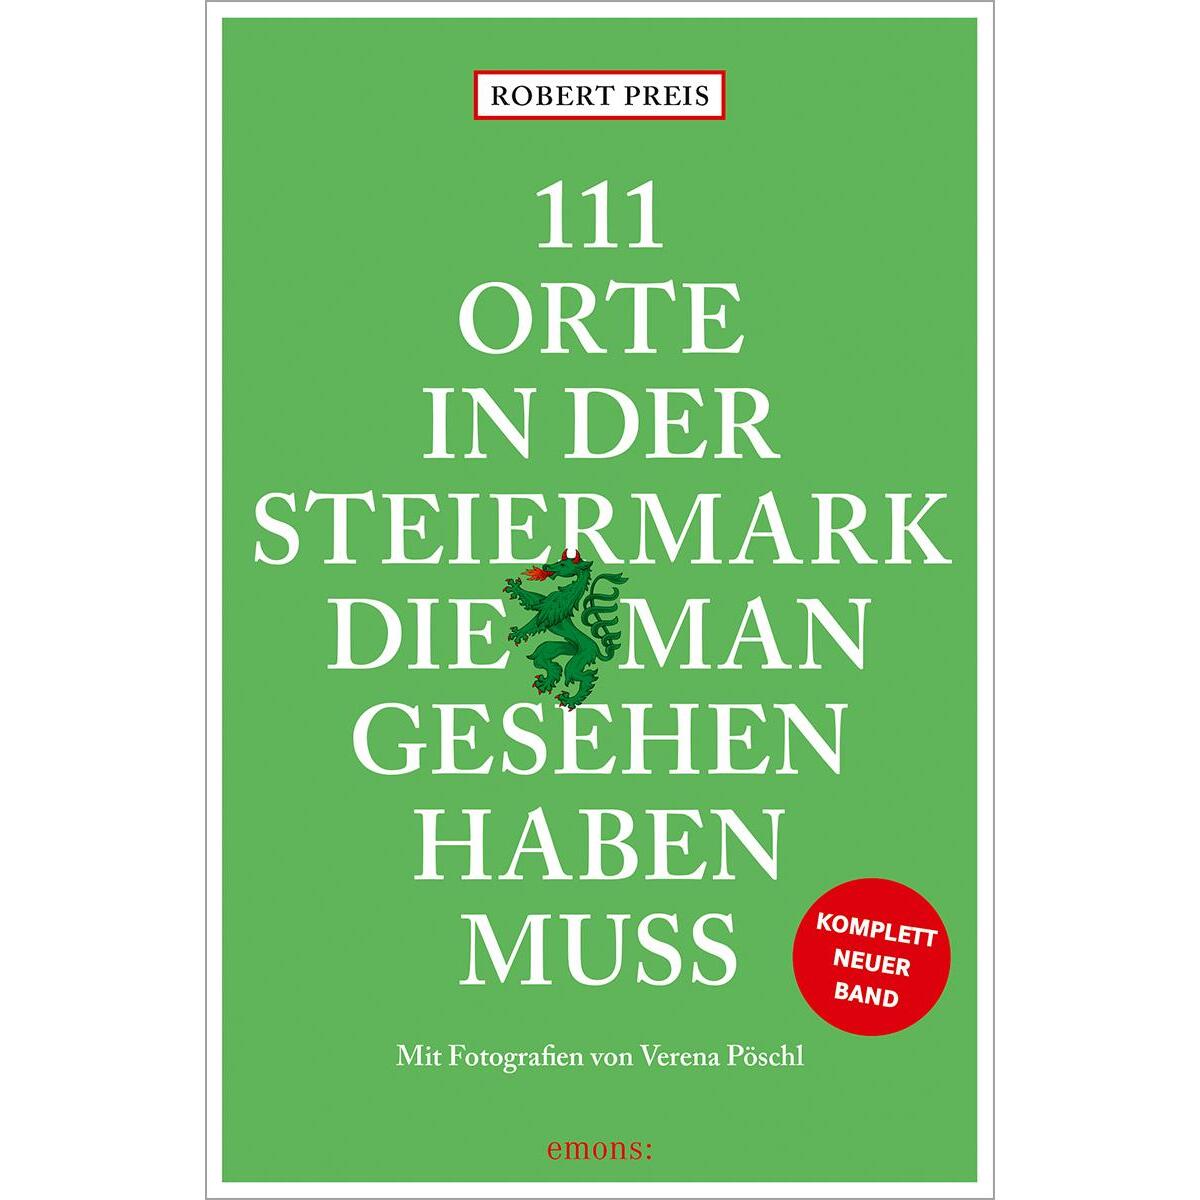 111 Orte in der Steiermark, die man gesehen haben muss, komplett neuer Band. von Emons Verlag